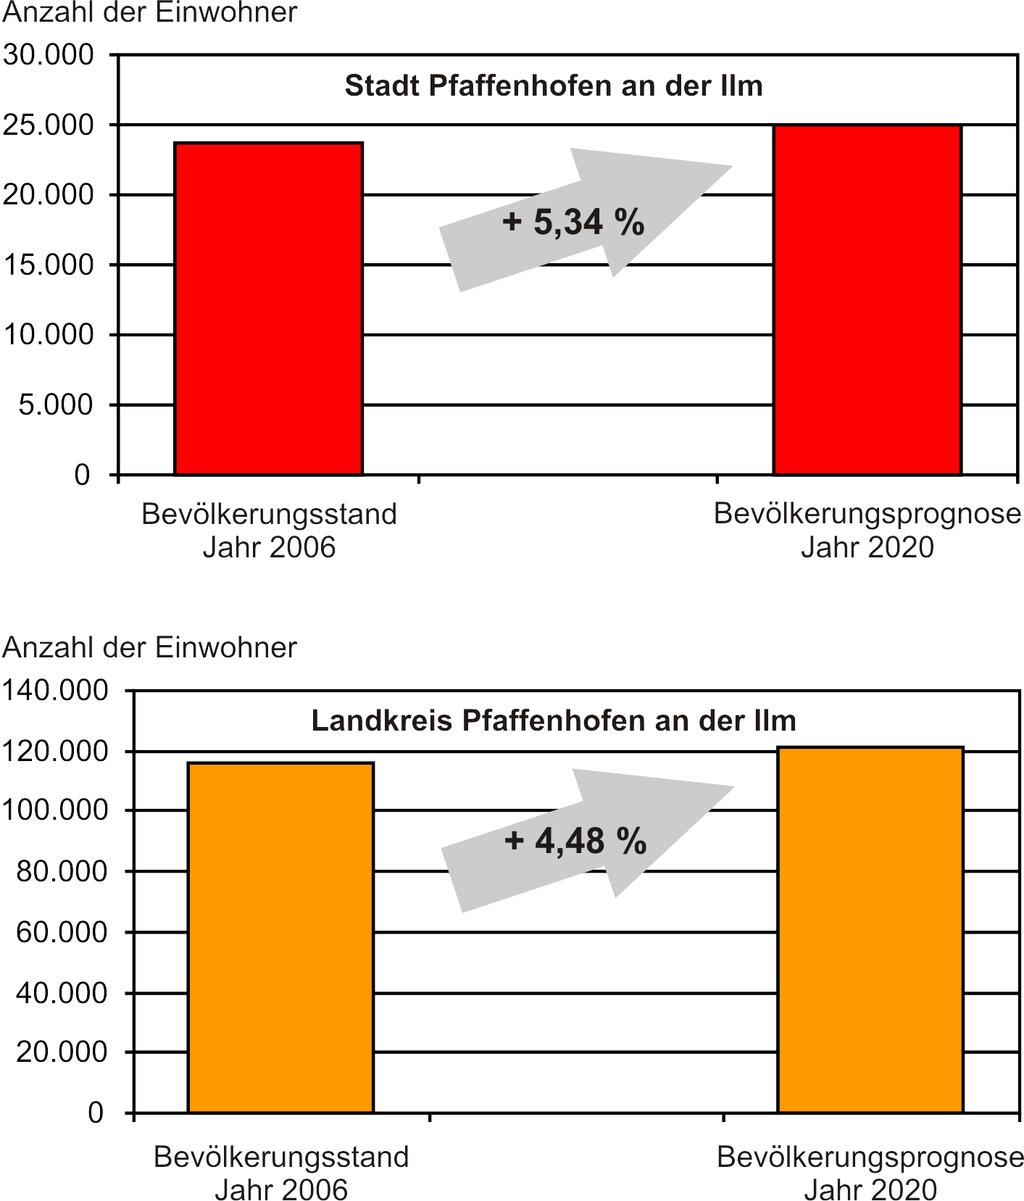 So ist für die Stadt Pfaffenhofen a.d. Ilm zumindest seit dem Jahr 2005 eine auch gegenüber dem Landkreis Pfaffenhofen überdurchschnittliche Entwicklung des Bevölkerungsstandes zu verzeichnen.